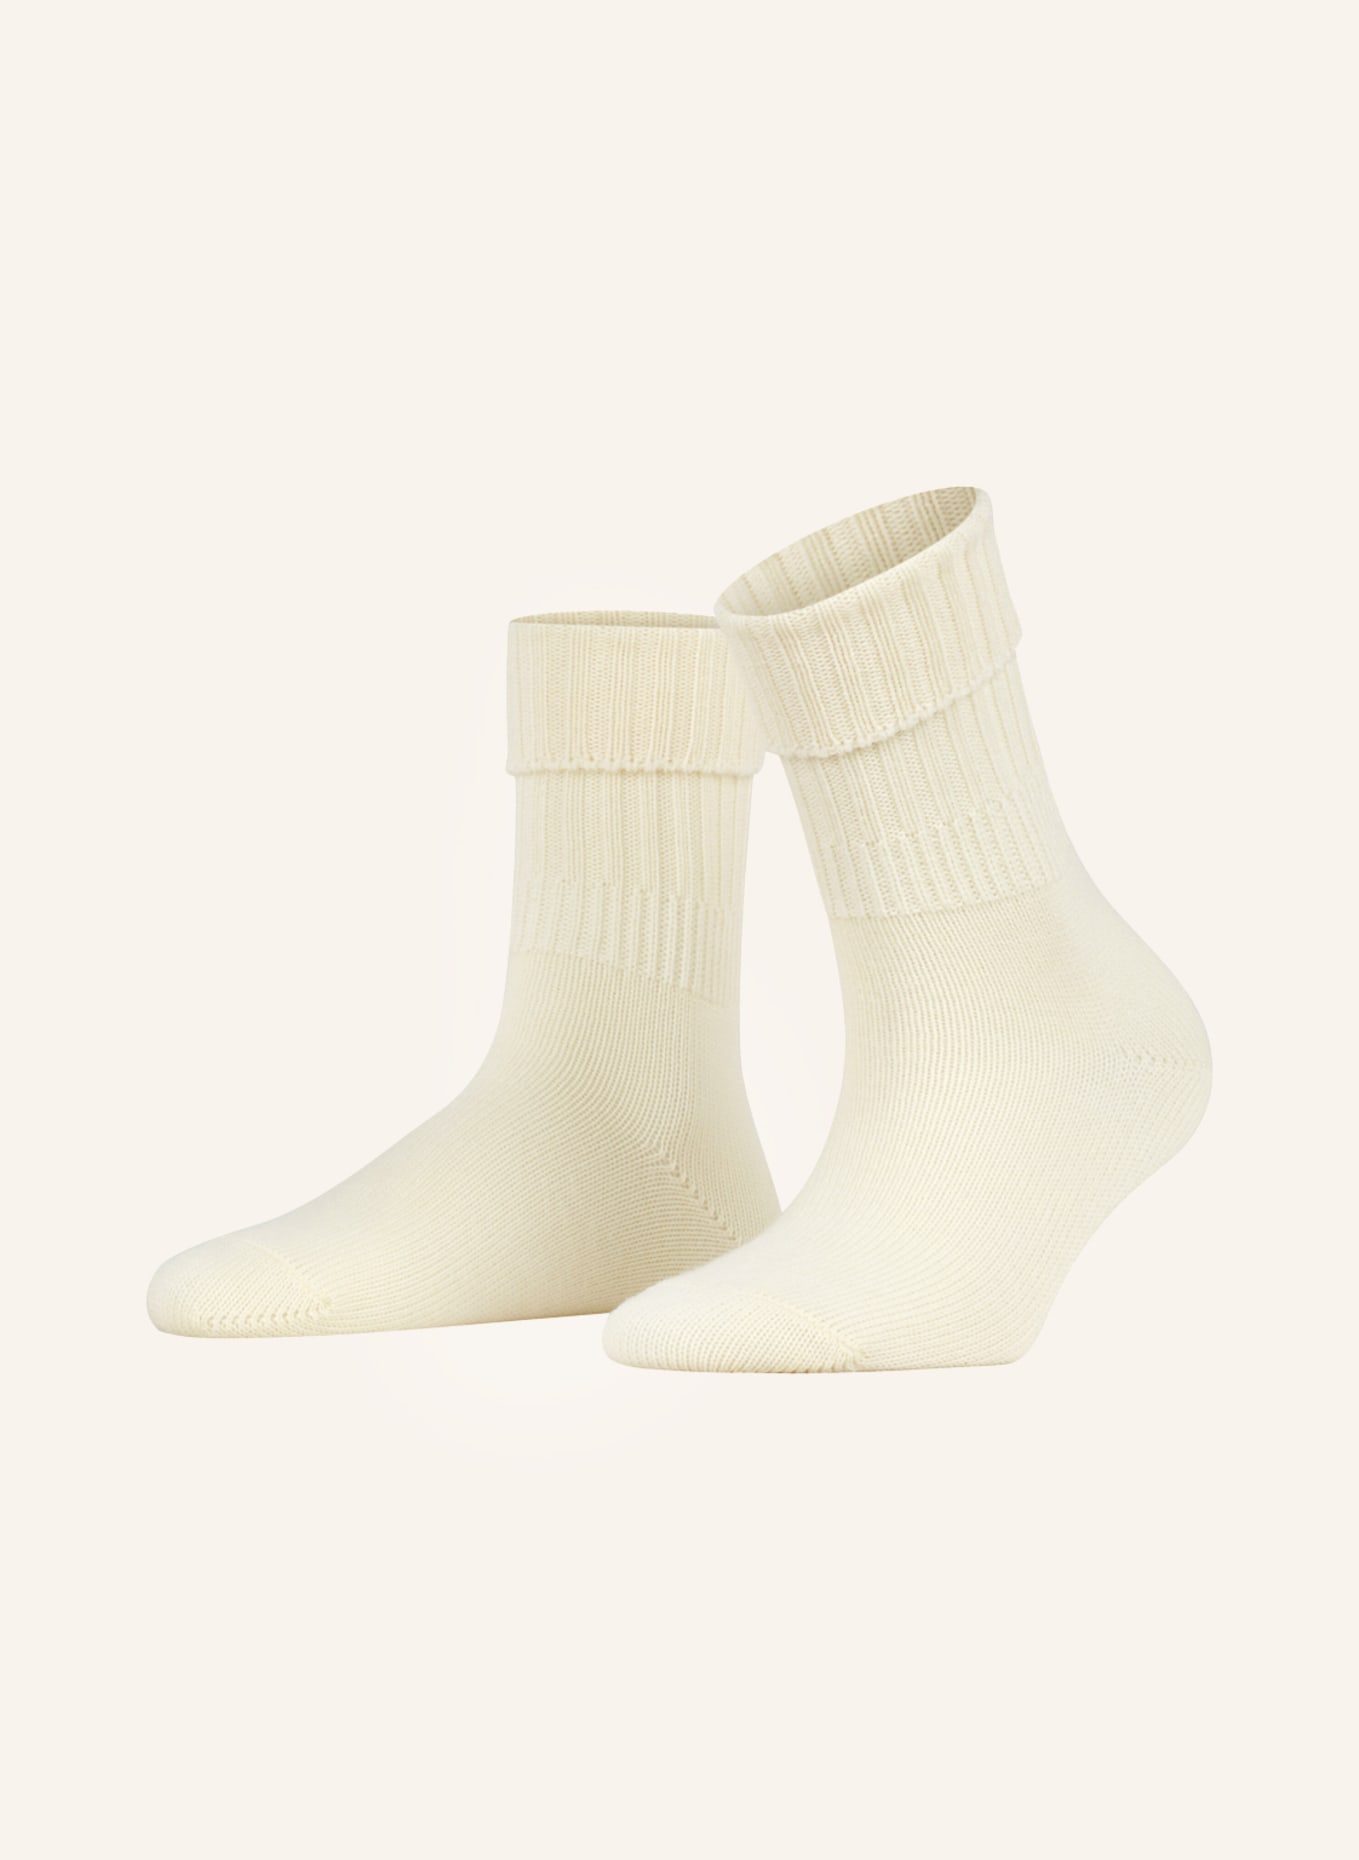 FALKE Socken STRIGGINGS, Farbe: 2069 WOOLWHITE (Bild 1)